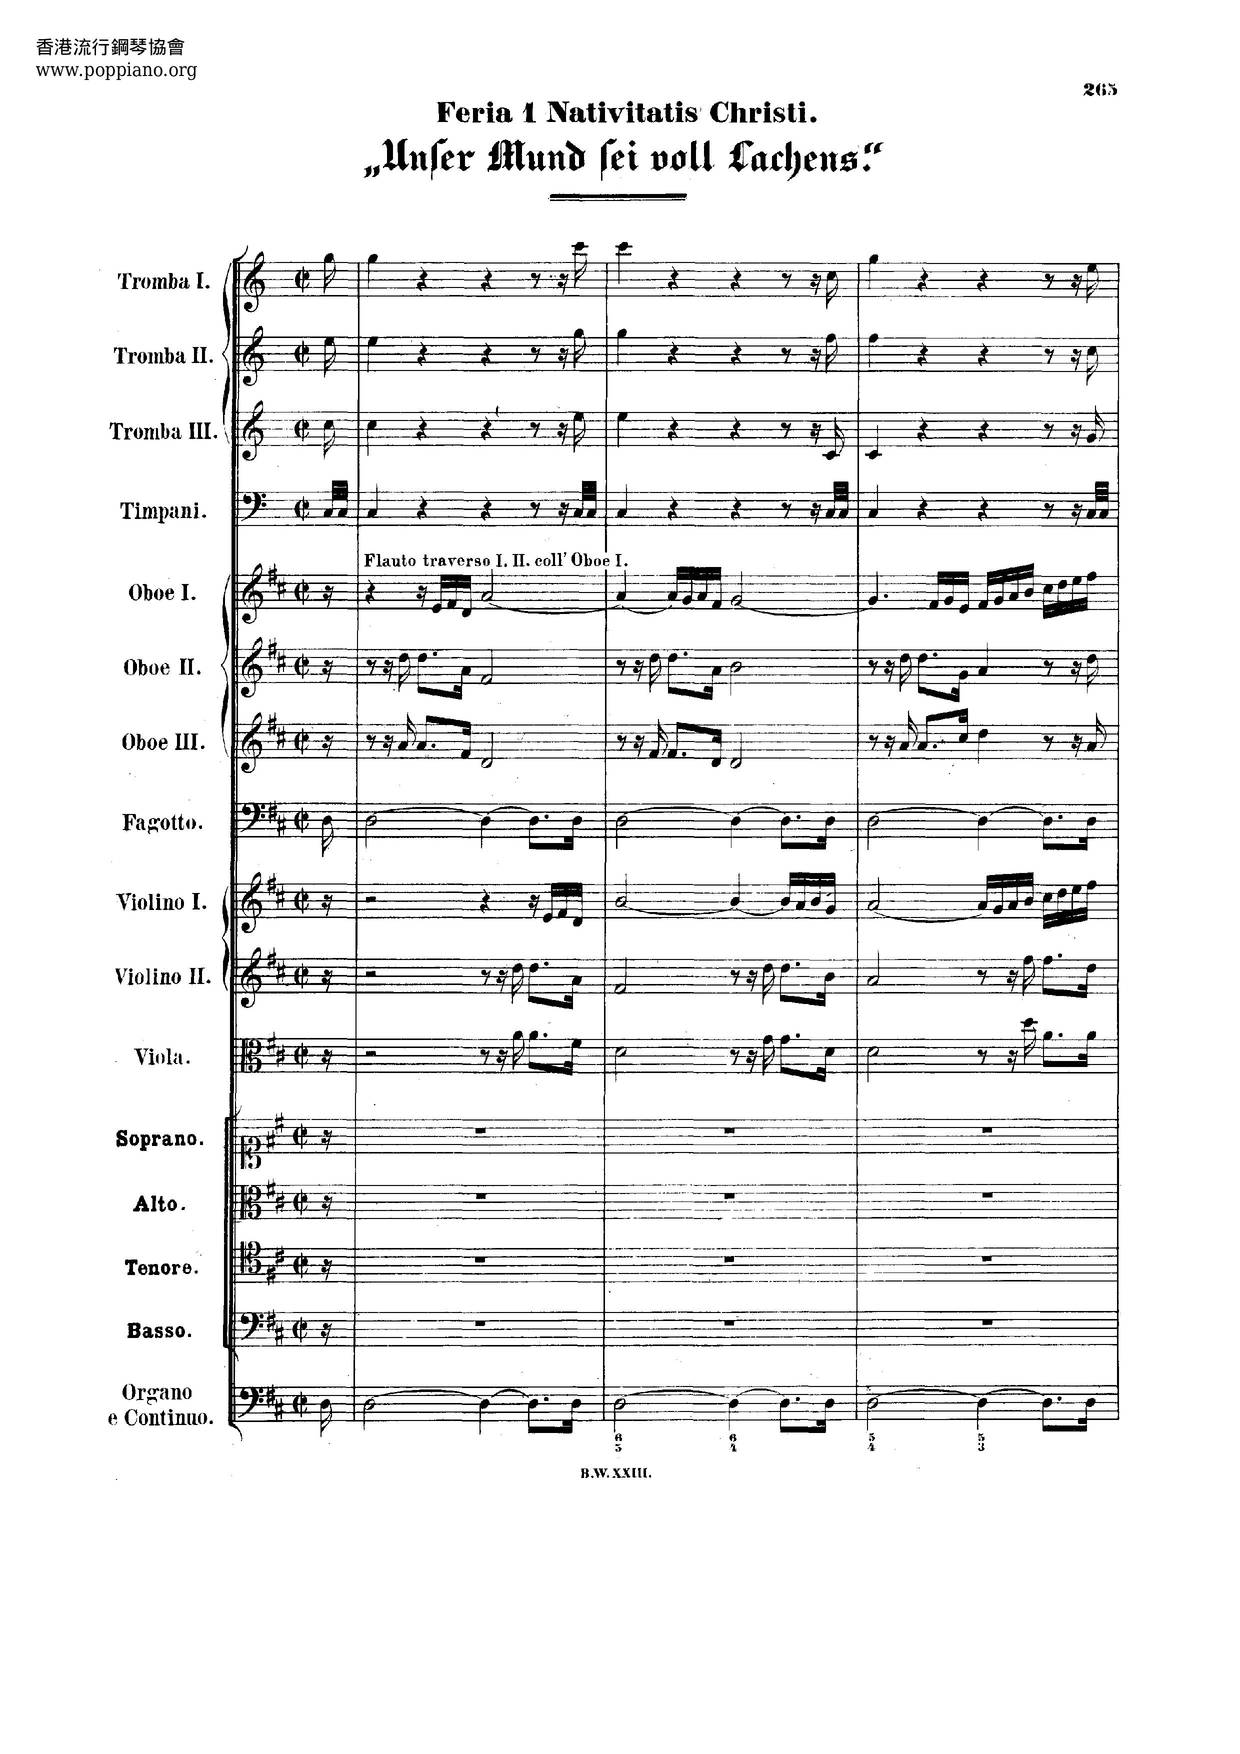 Unser Mund Sei Voll Lachens, BWV 110 Score